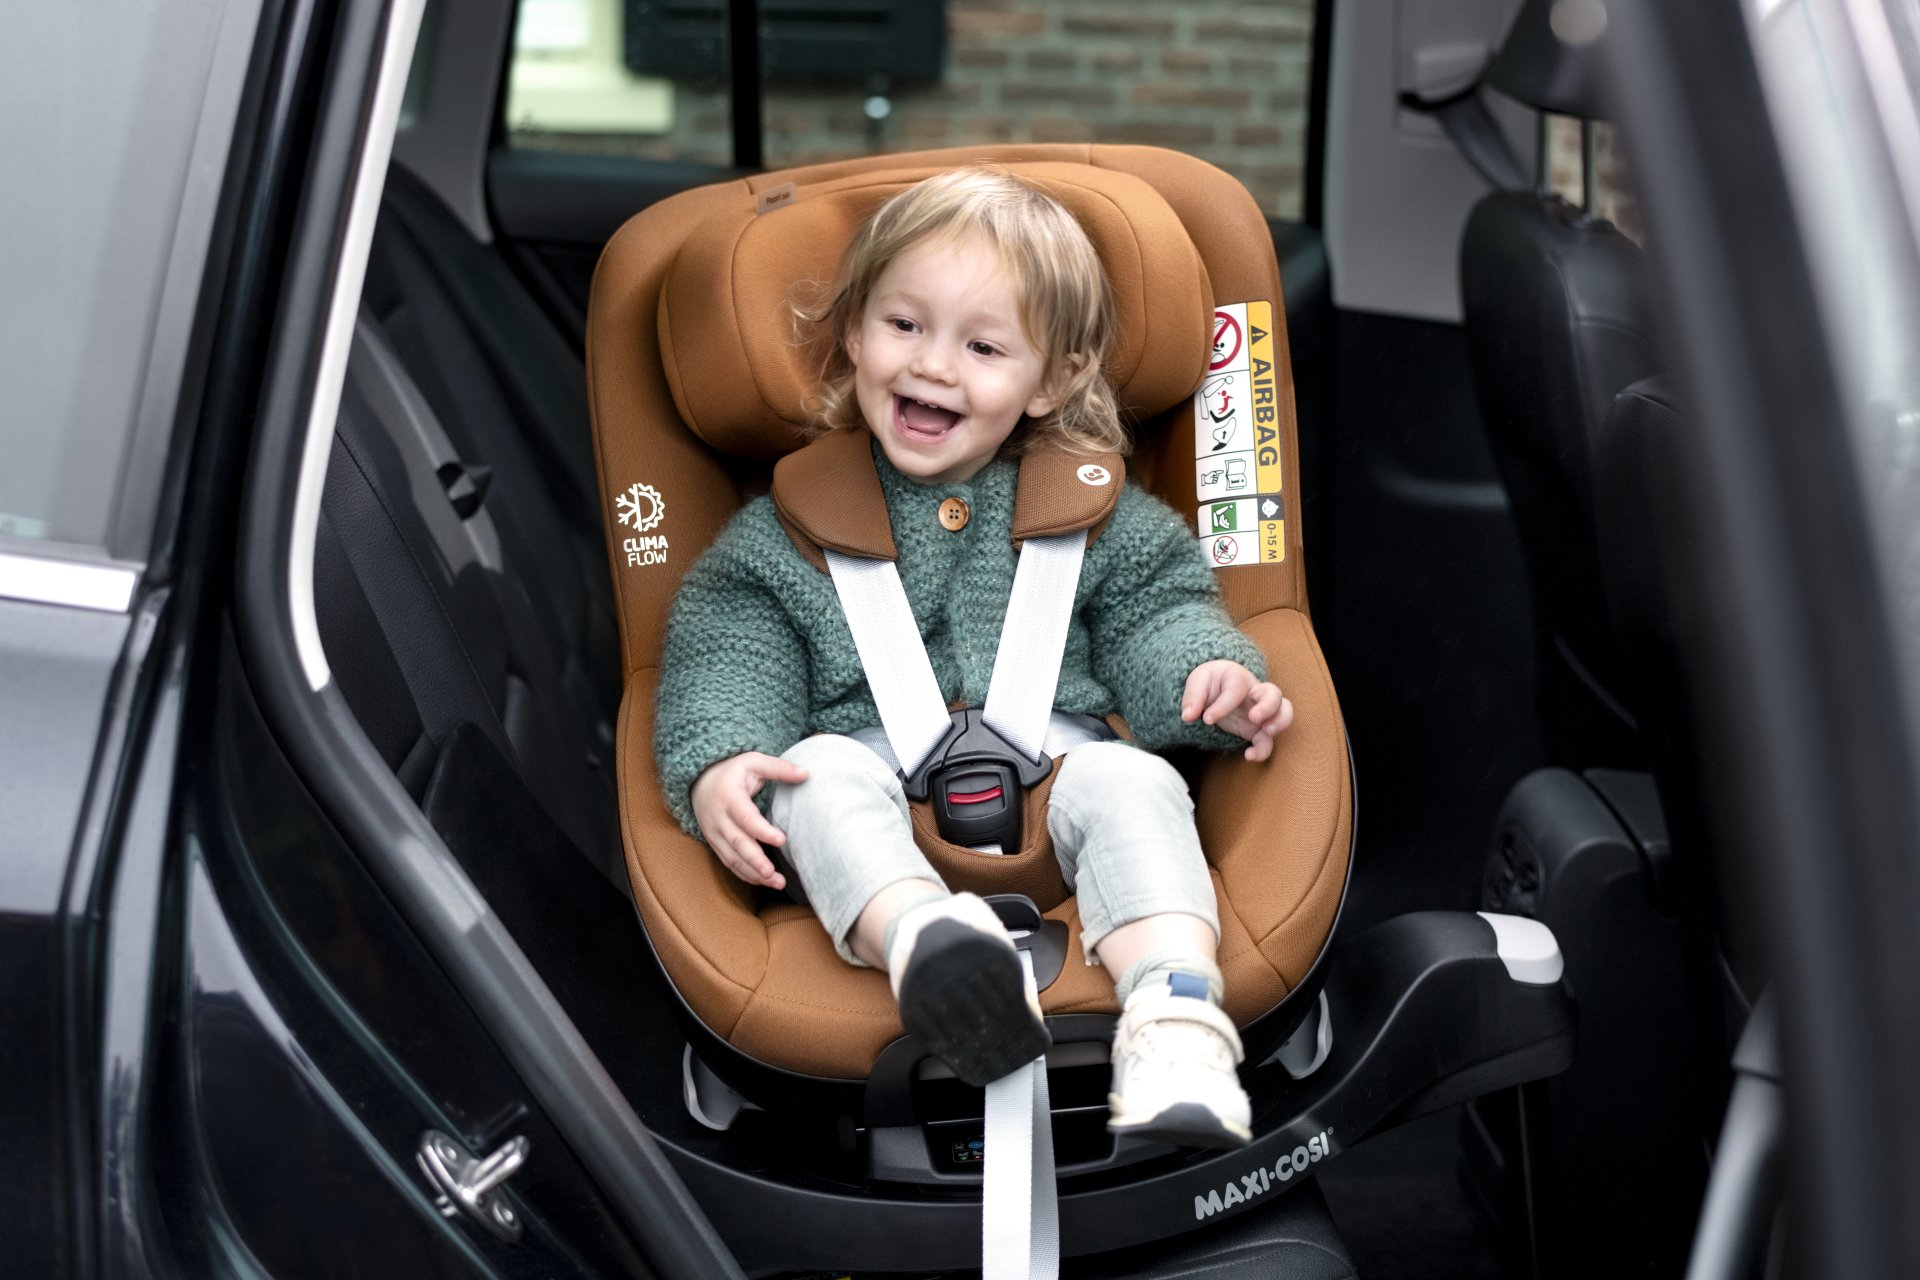 Maxi-Cosi grey Pearl 360 Pro Car Seat